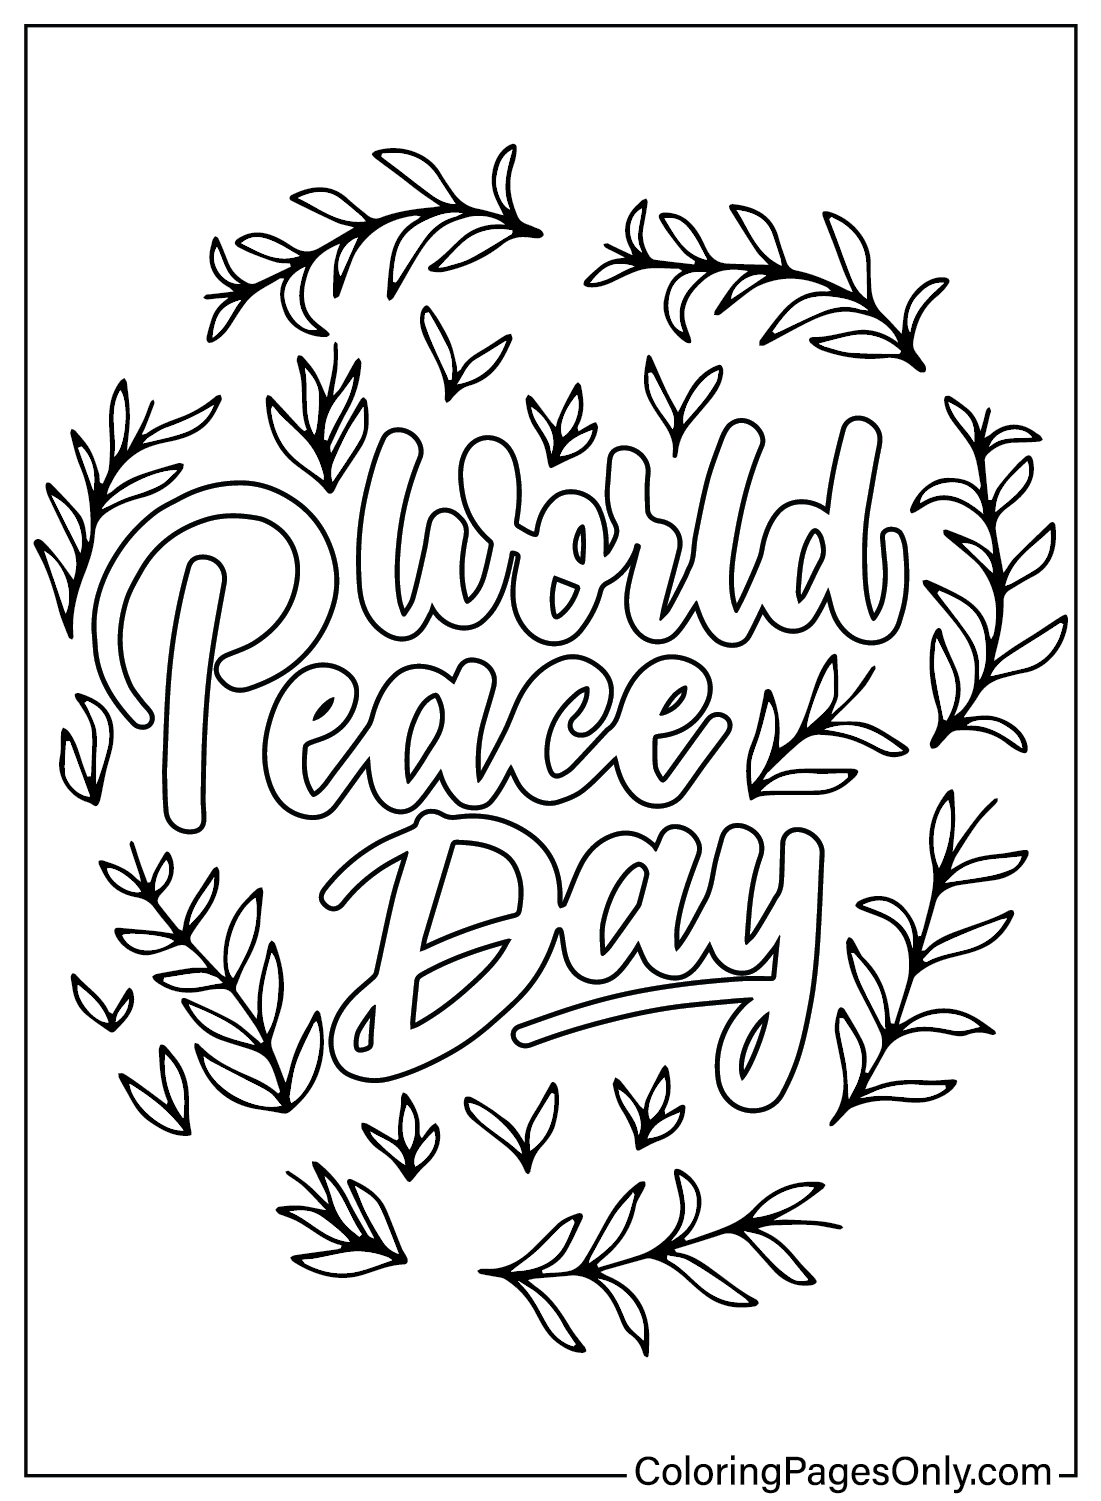 Coloriage gratuit pour la Journée mondiale de la paix